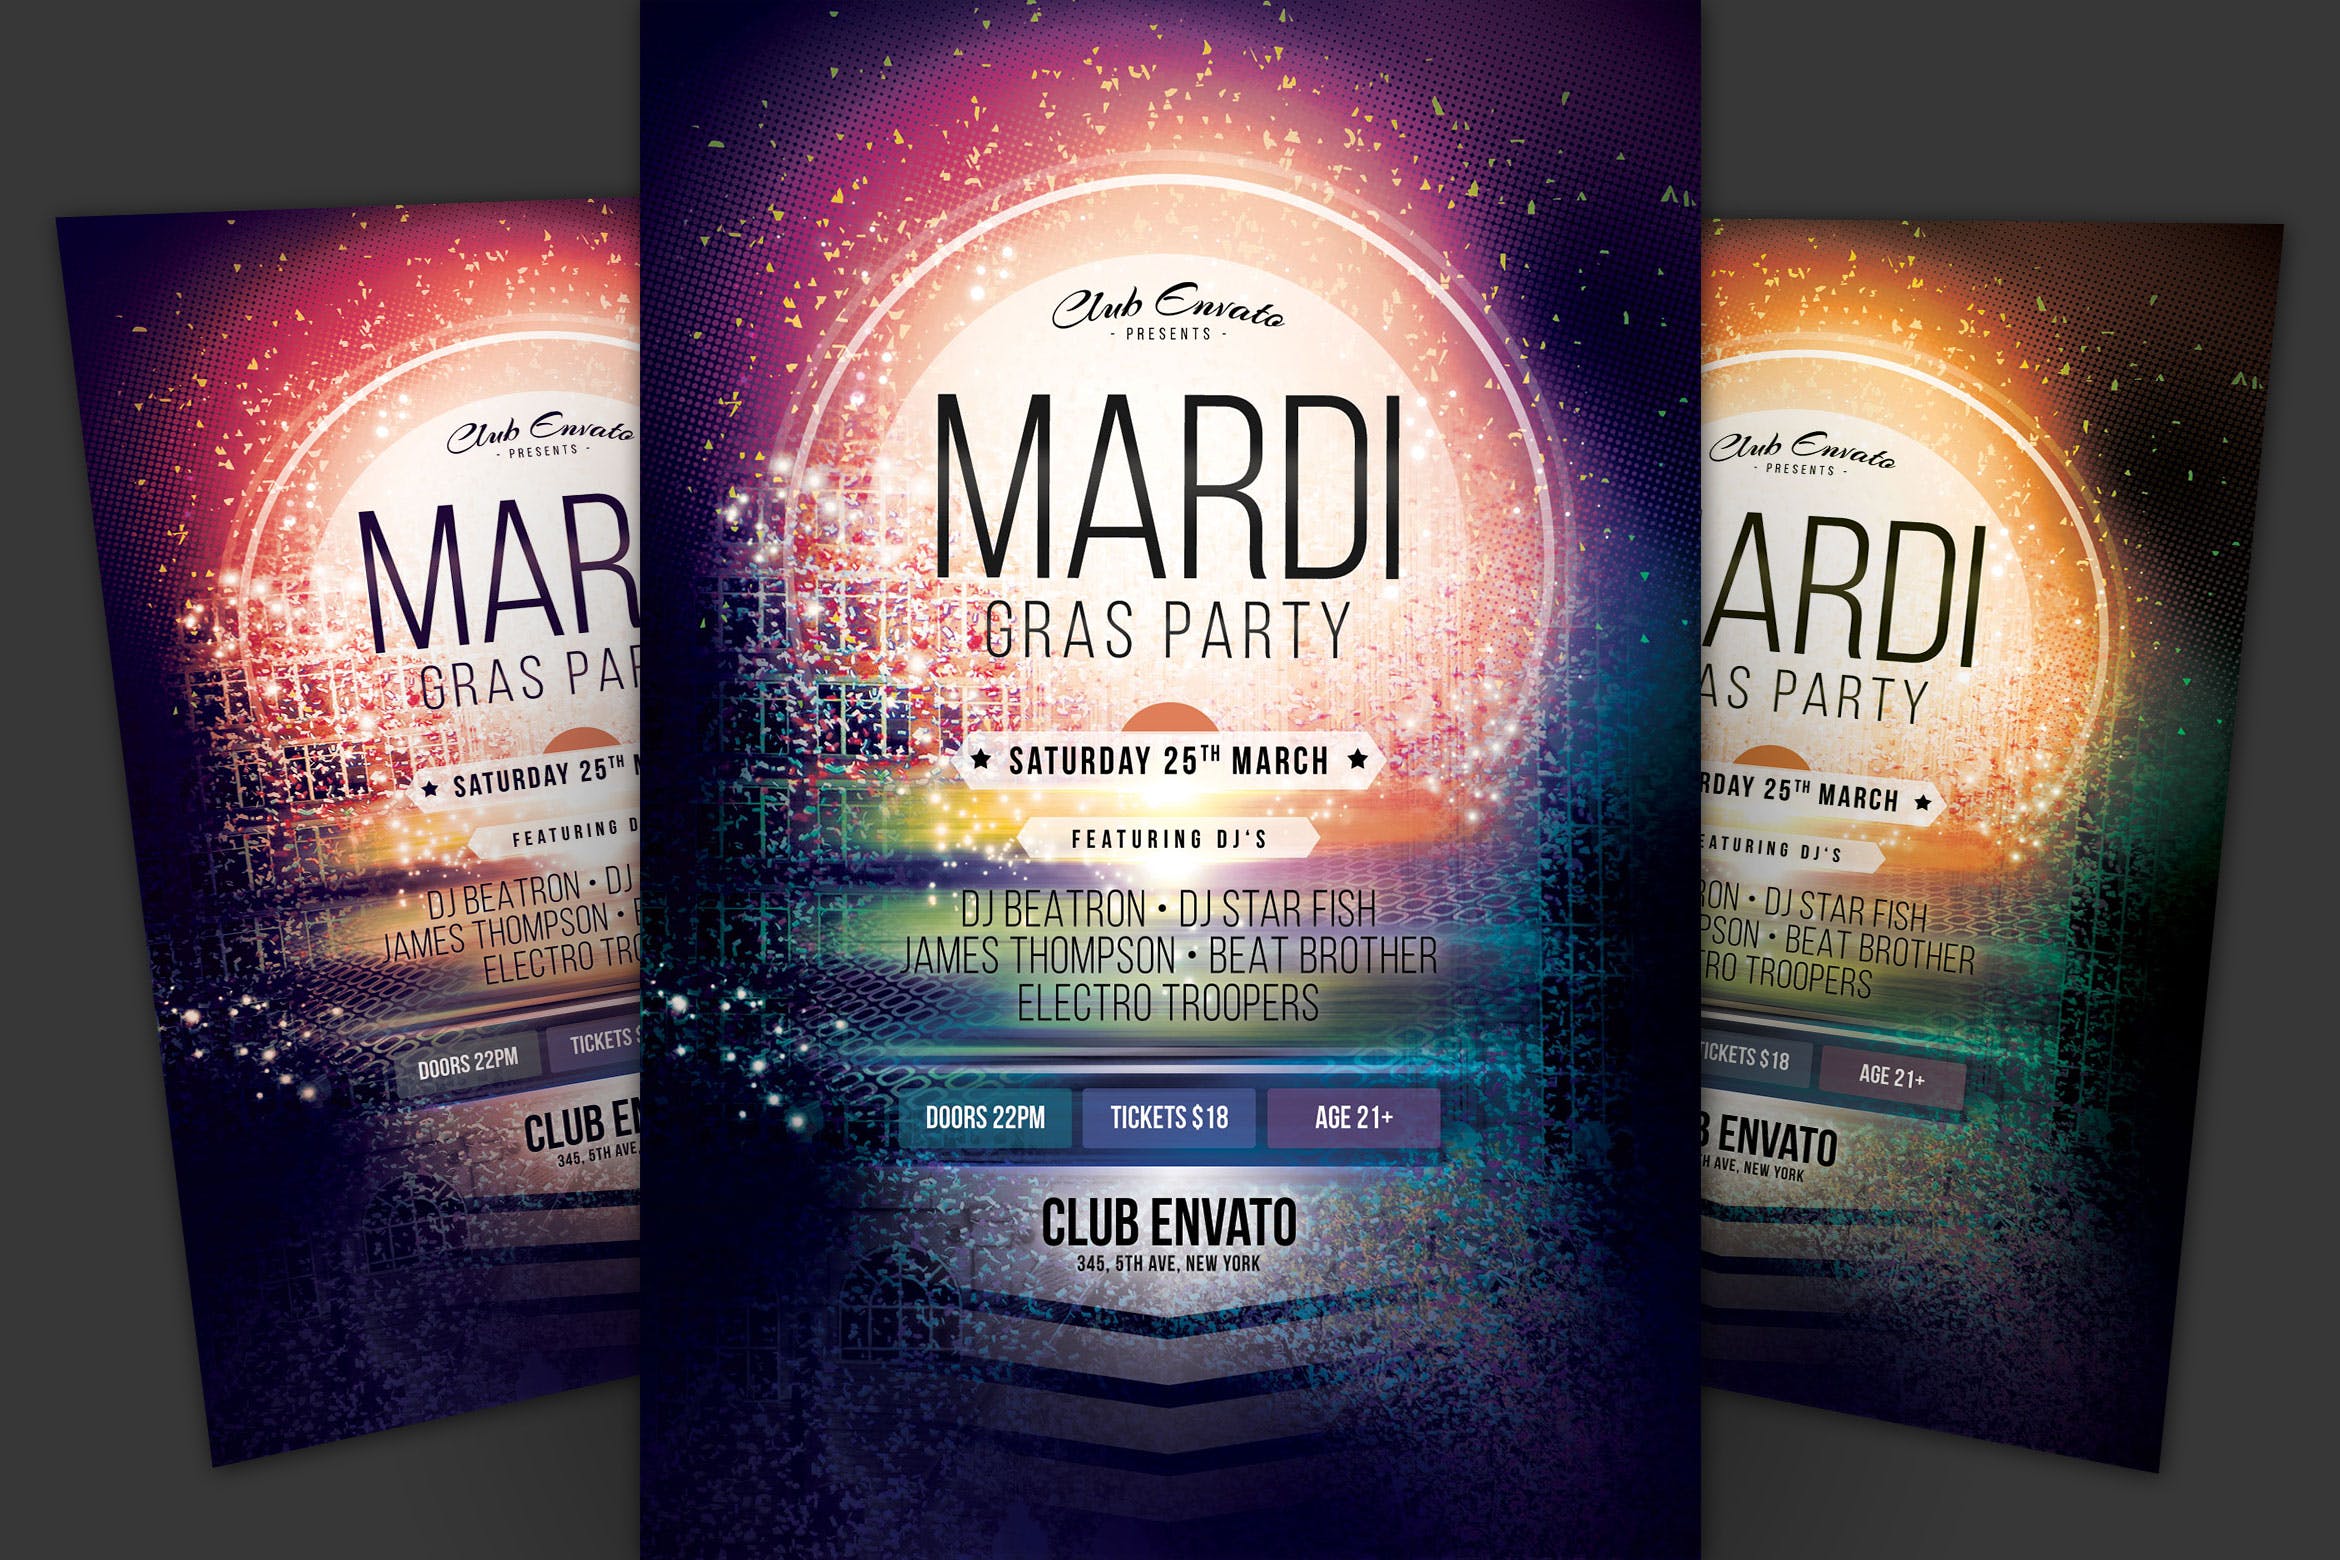 狂欢节庆祝活动海报传单第一素材精选PSD模板 Mardi Gras Party Flyer插图